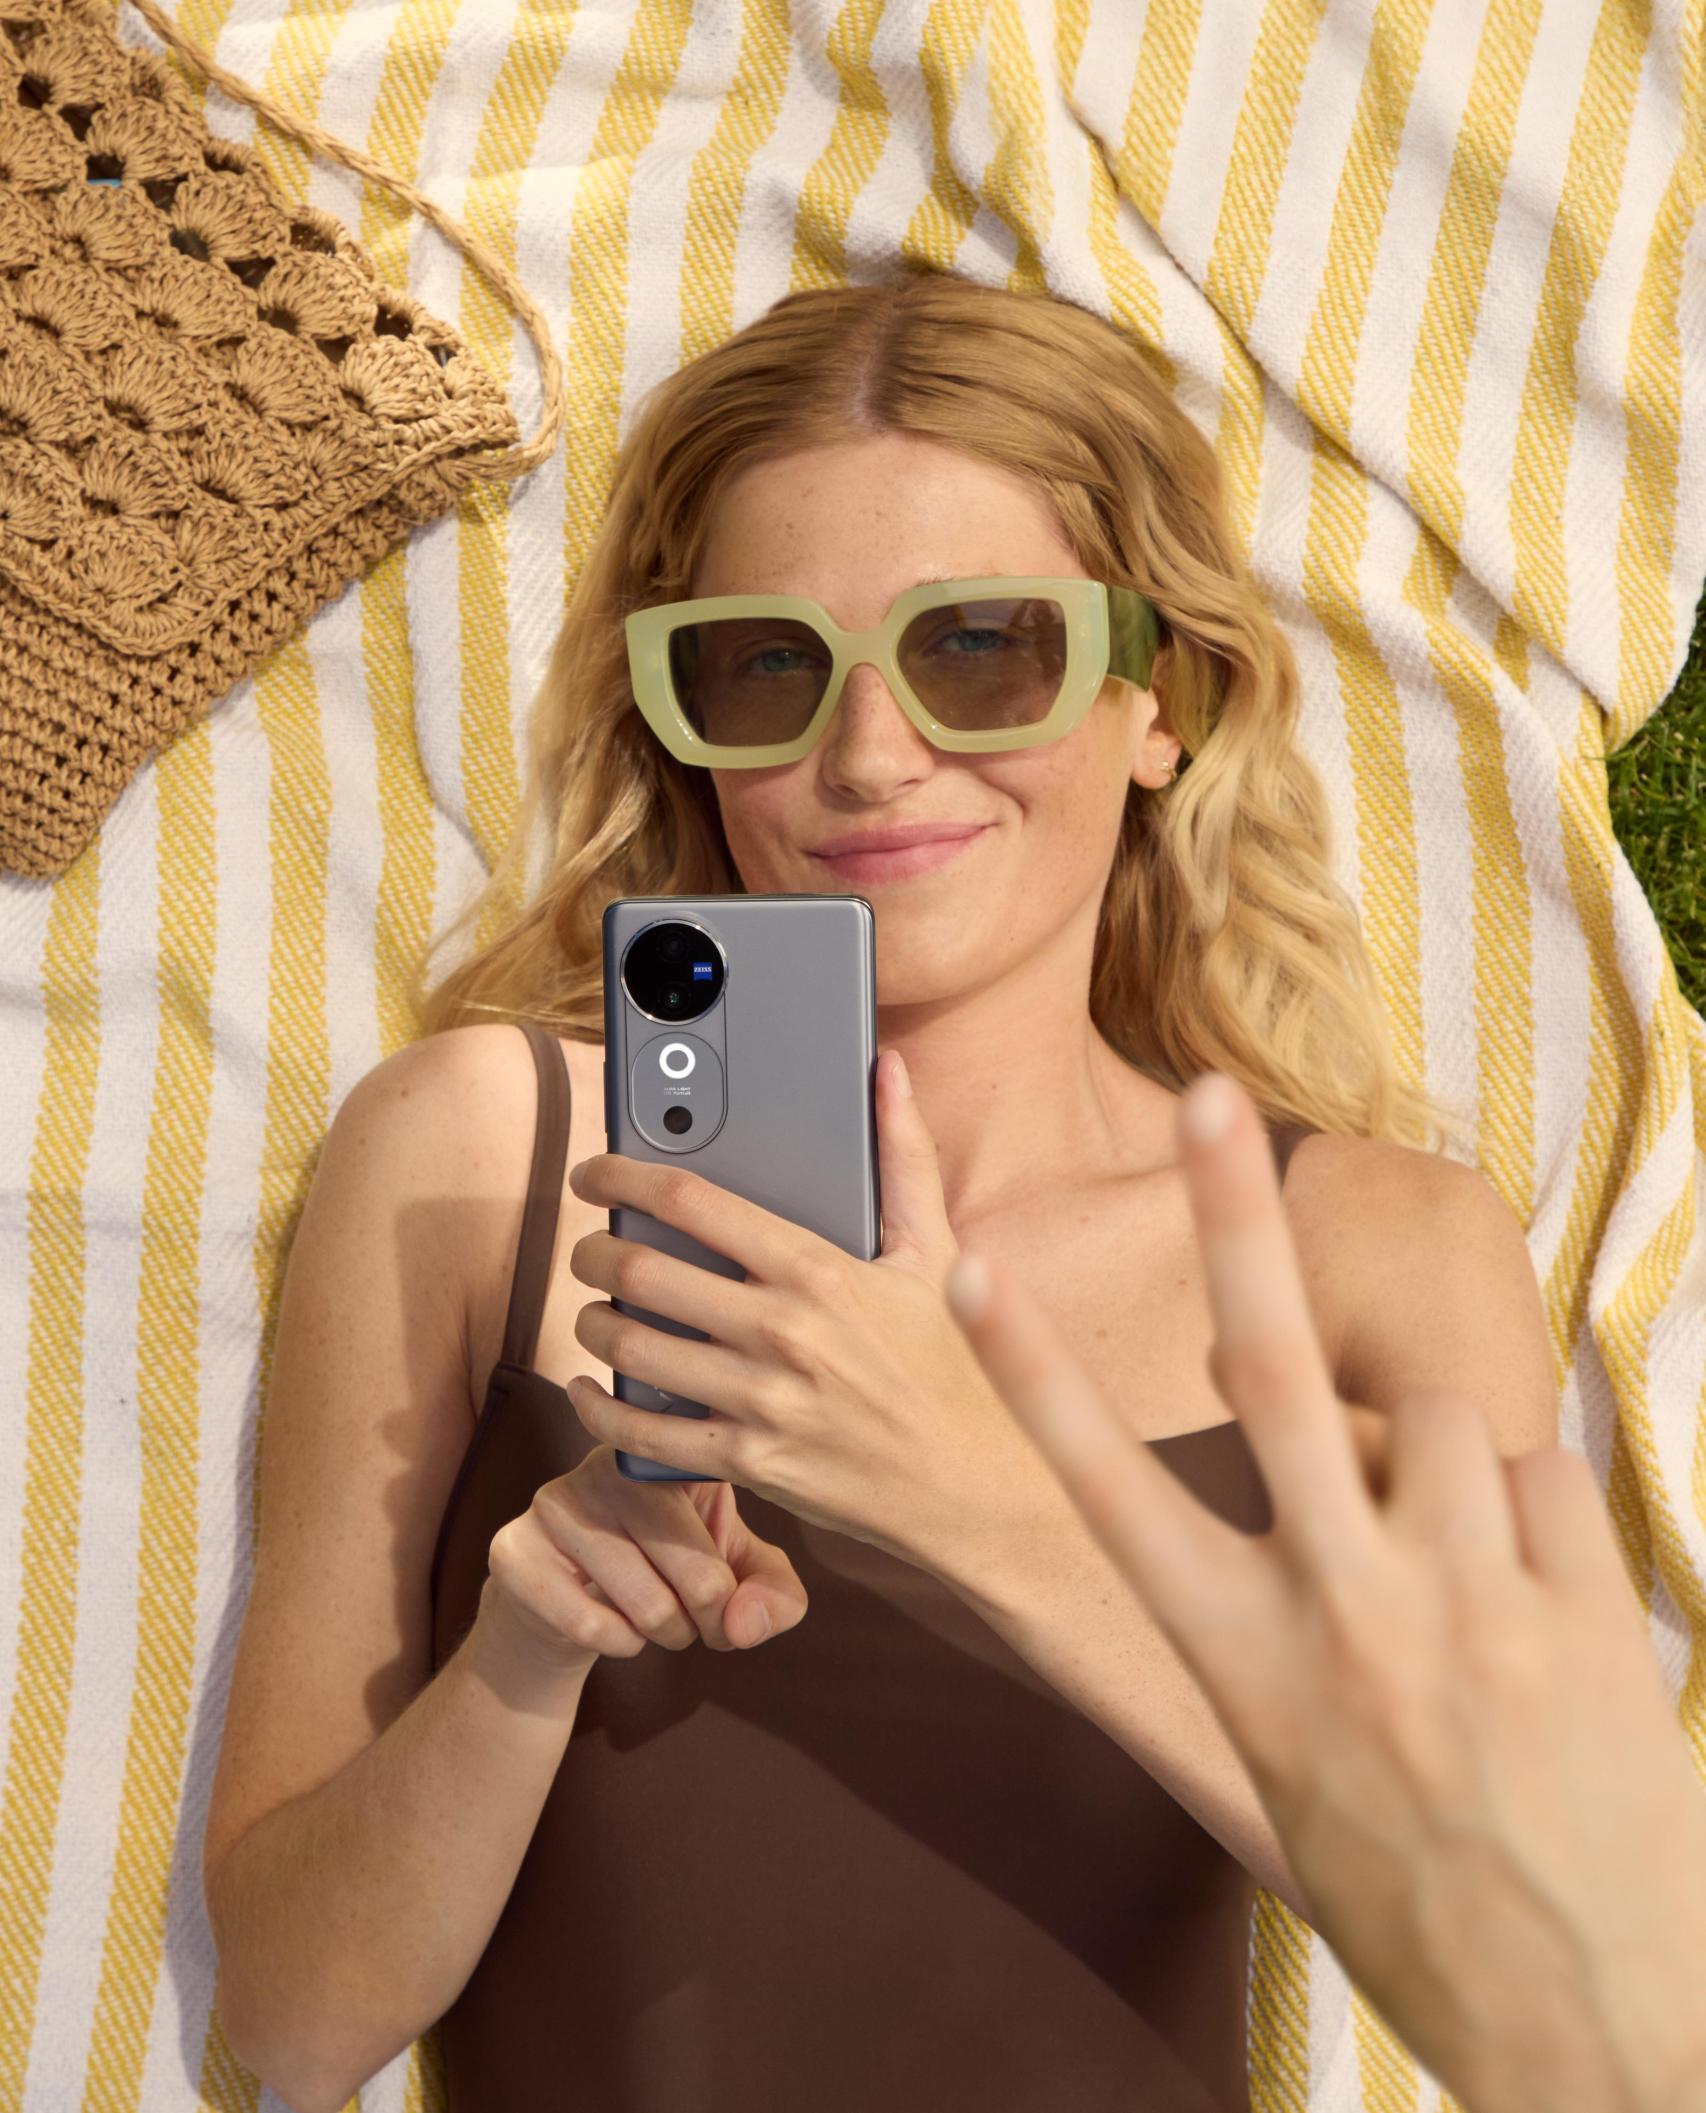 Con el smartphone V40 podrás hacer fotografías profesionales en la piscina, la noche, la playa...